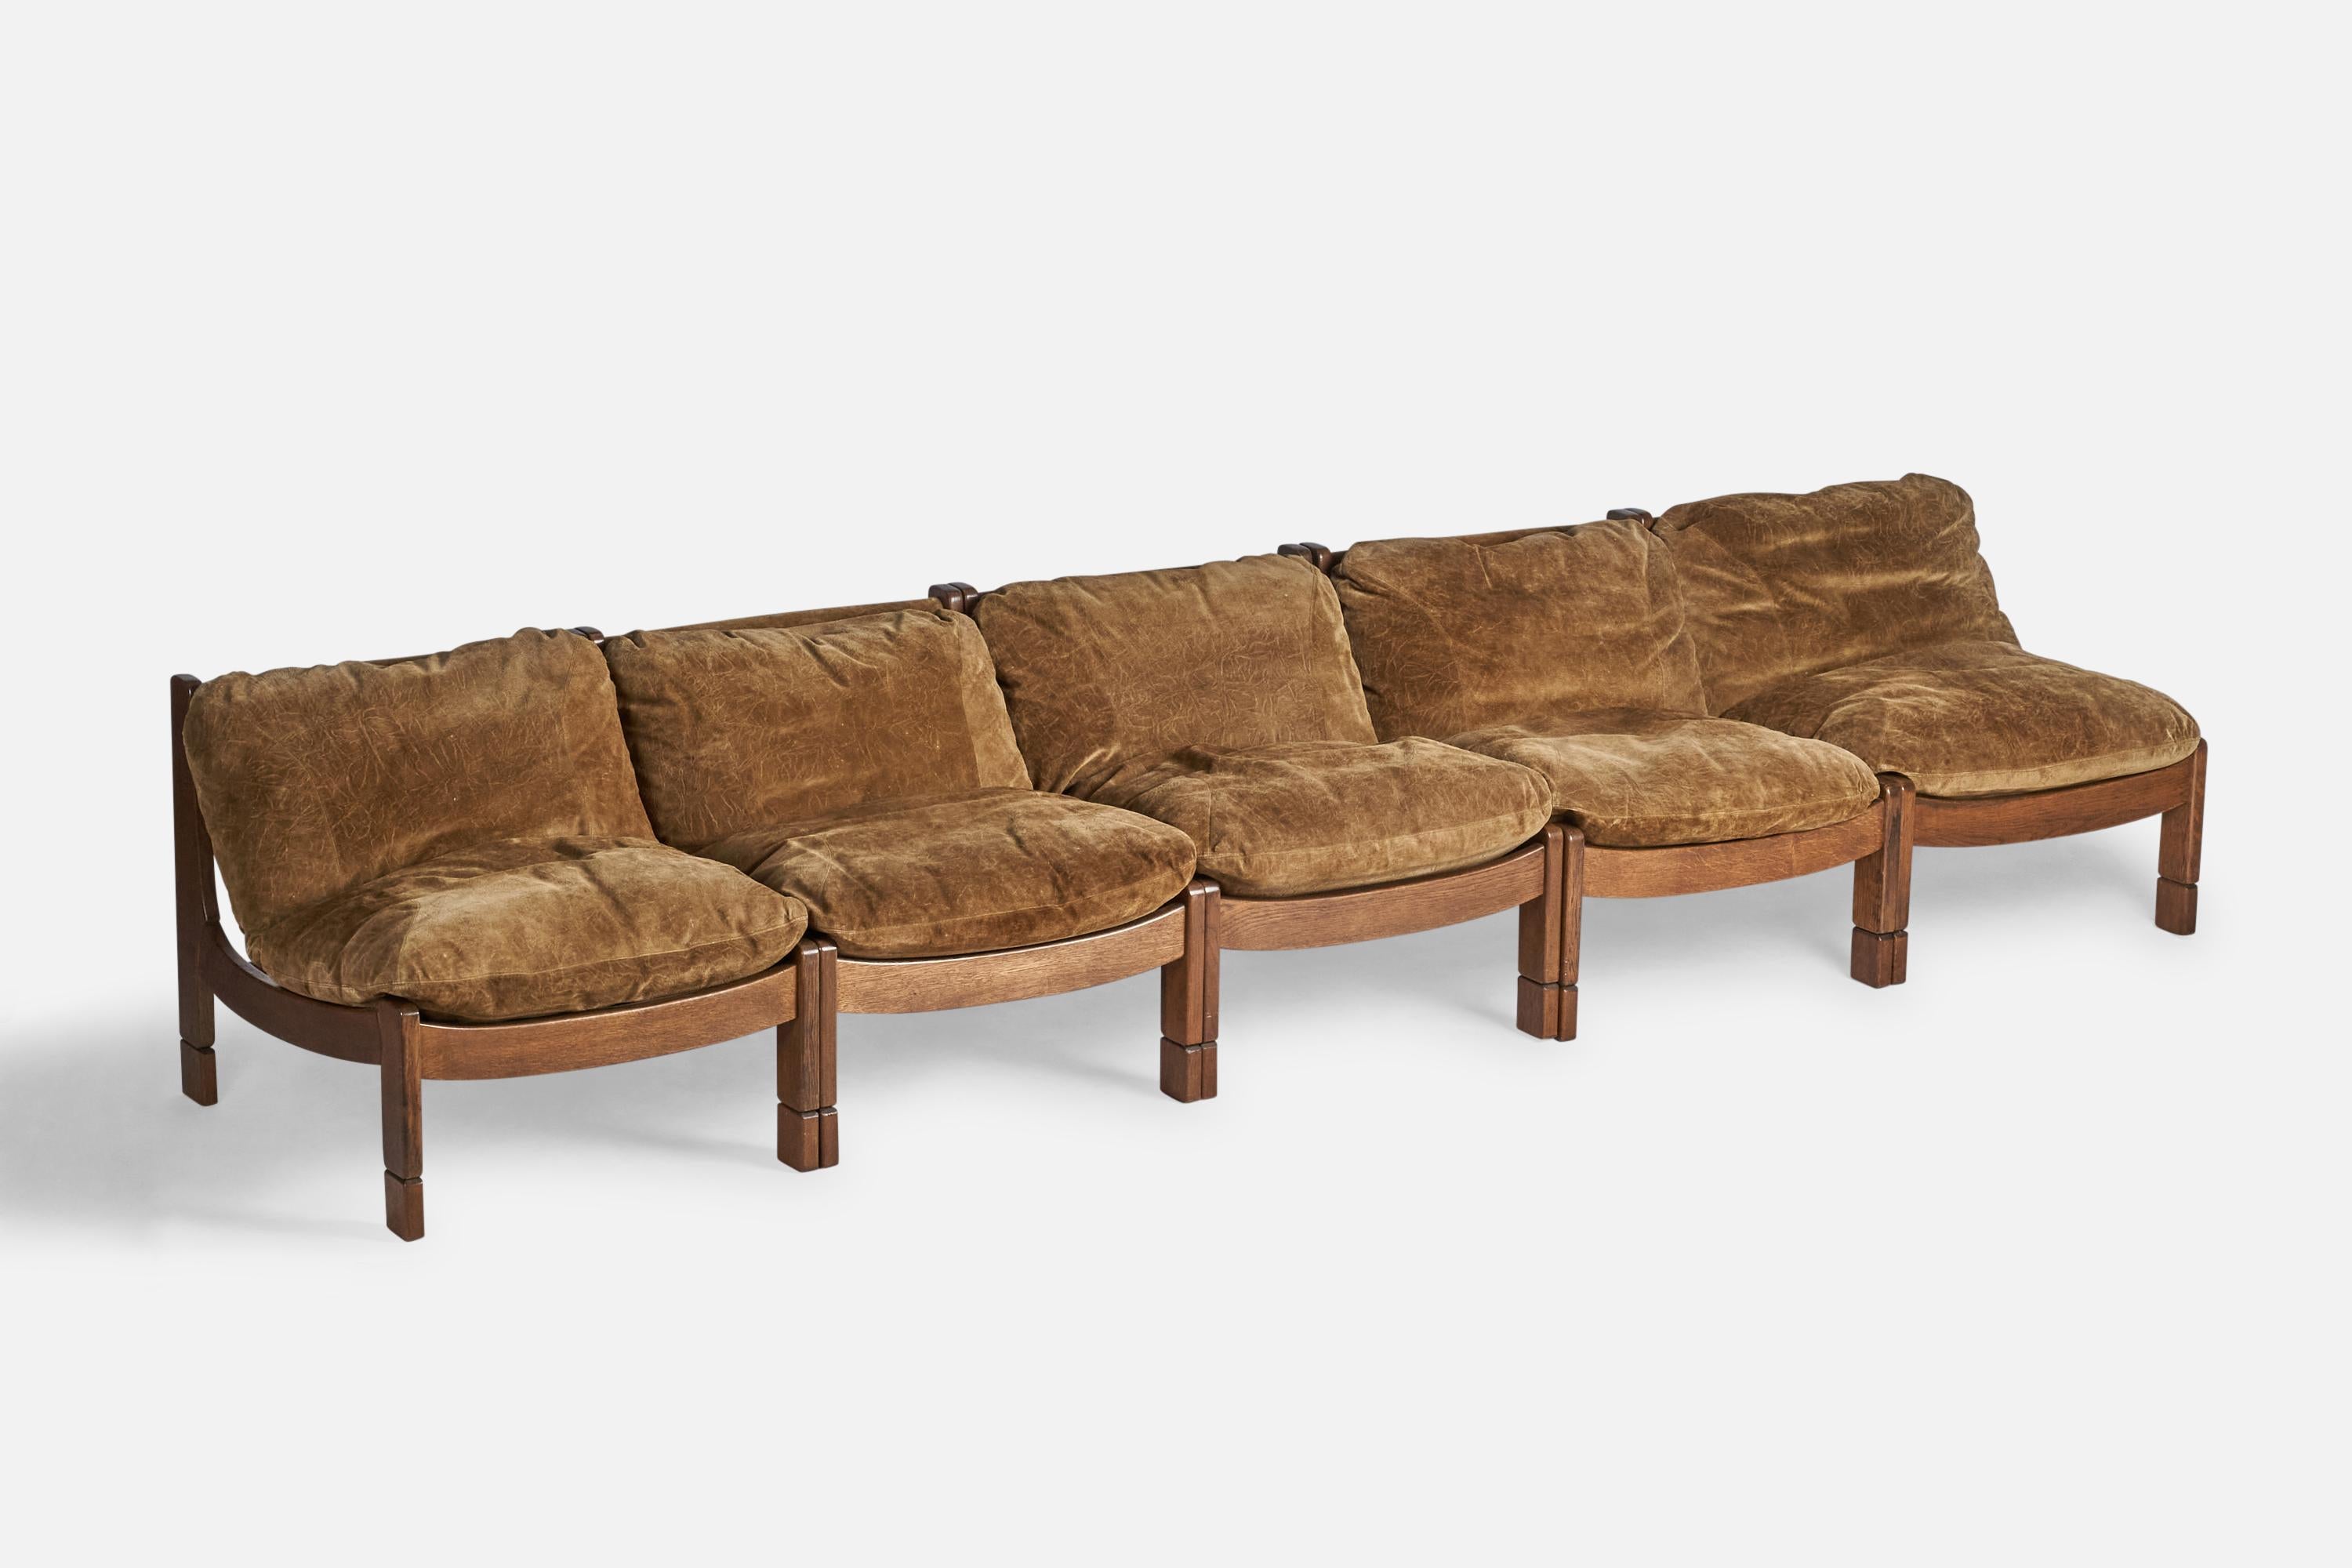 Ein modulares Sofa aus dunkel gebeizter Eiche, braunem Wildleder und Kordel oder 5 Pantoffelstühle mit Ottomane, entworfen und hergestellt in Spanien, um 1950.